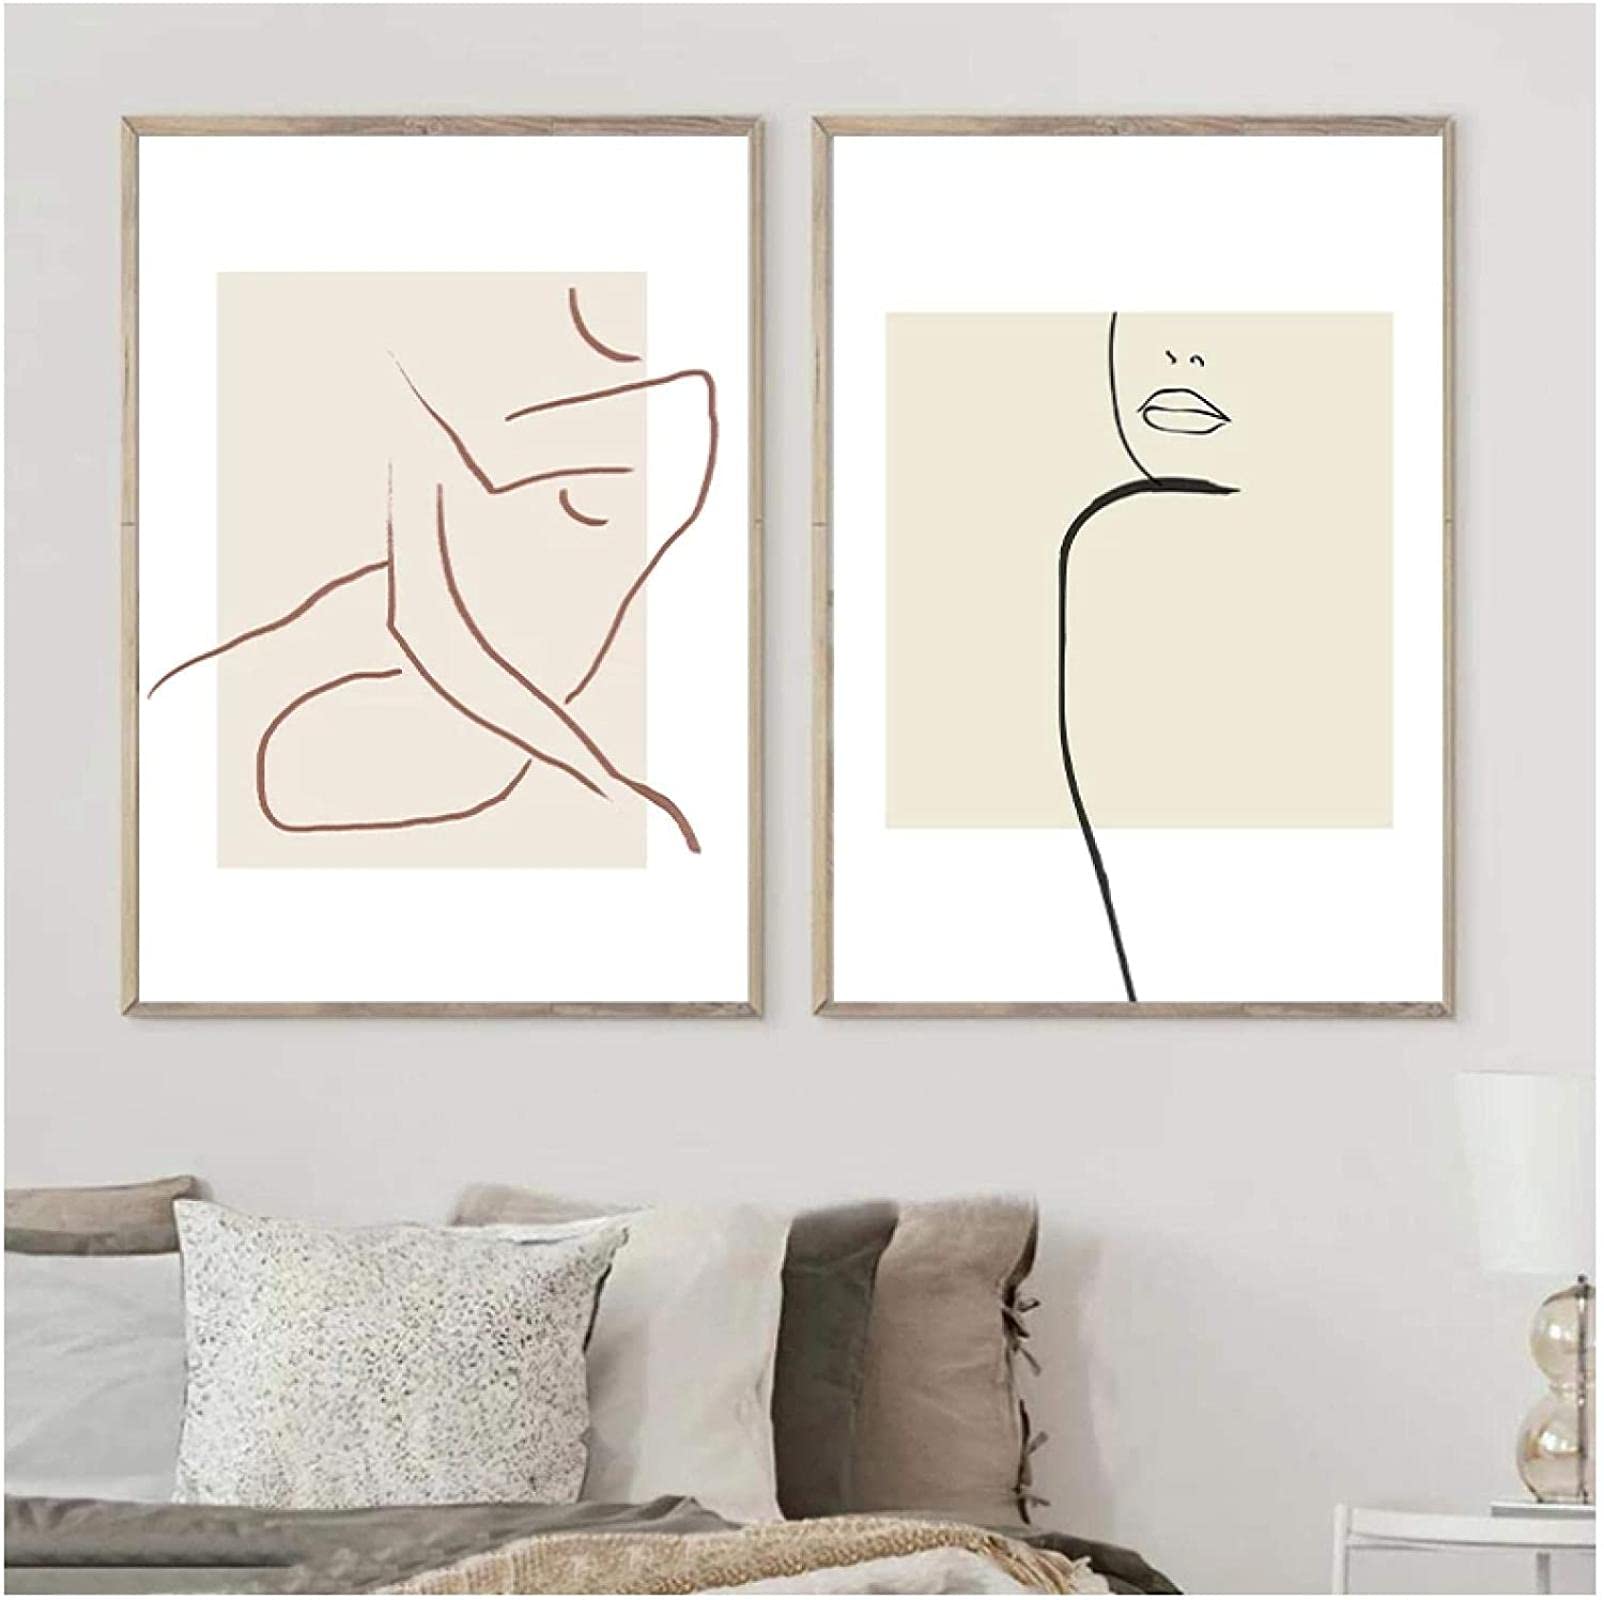 Drucke für Wände 2x50x70cm ohne Rahmen Grafik Abstract Sexy Frau Körper Fine Line Art Druck Neutrale Wandbilder Minimalist Poster Decor